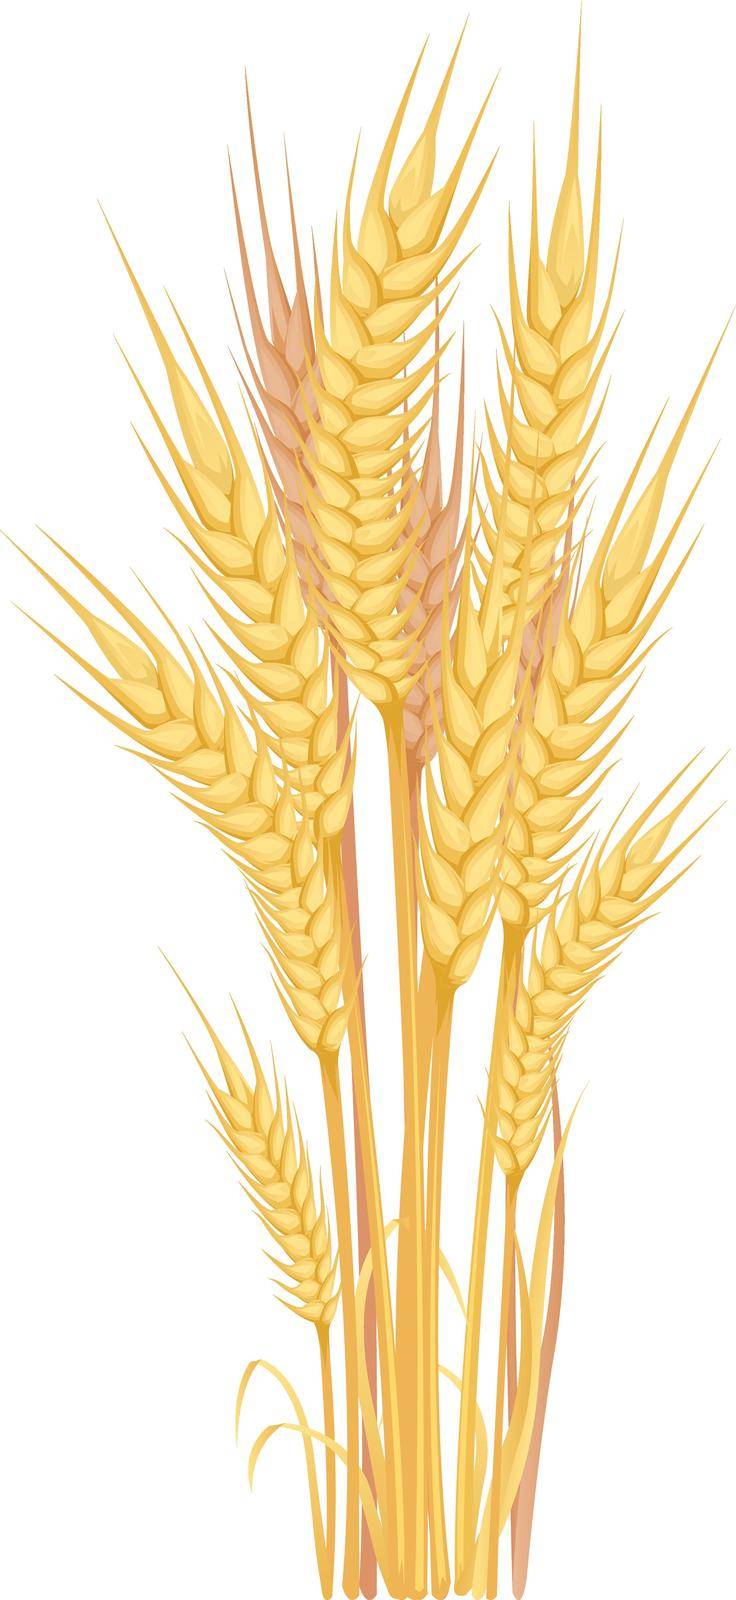 Grain crops bouquet. Harvest symbol. Cartoon ears by Stock-Smart-Start